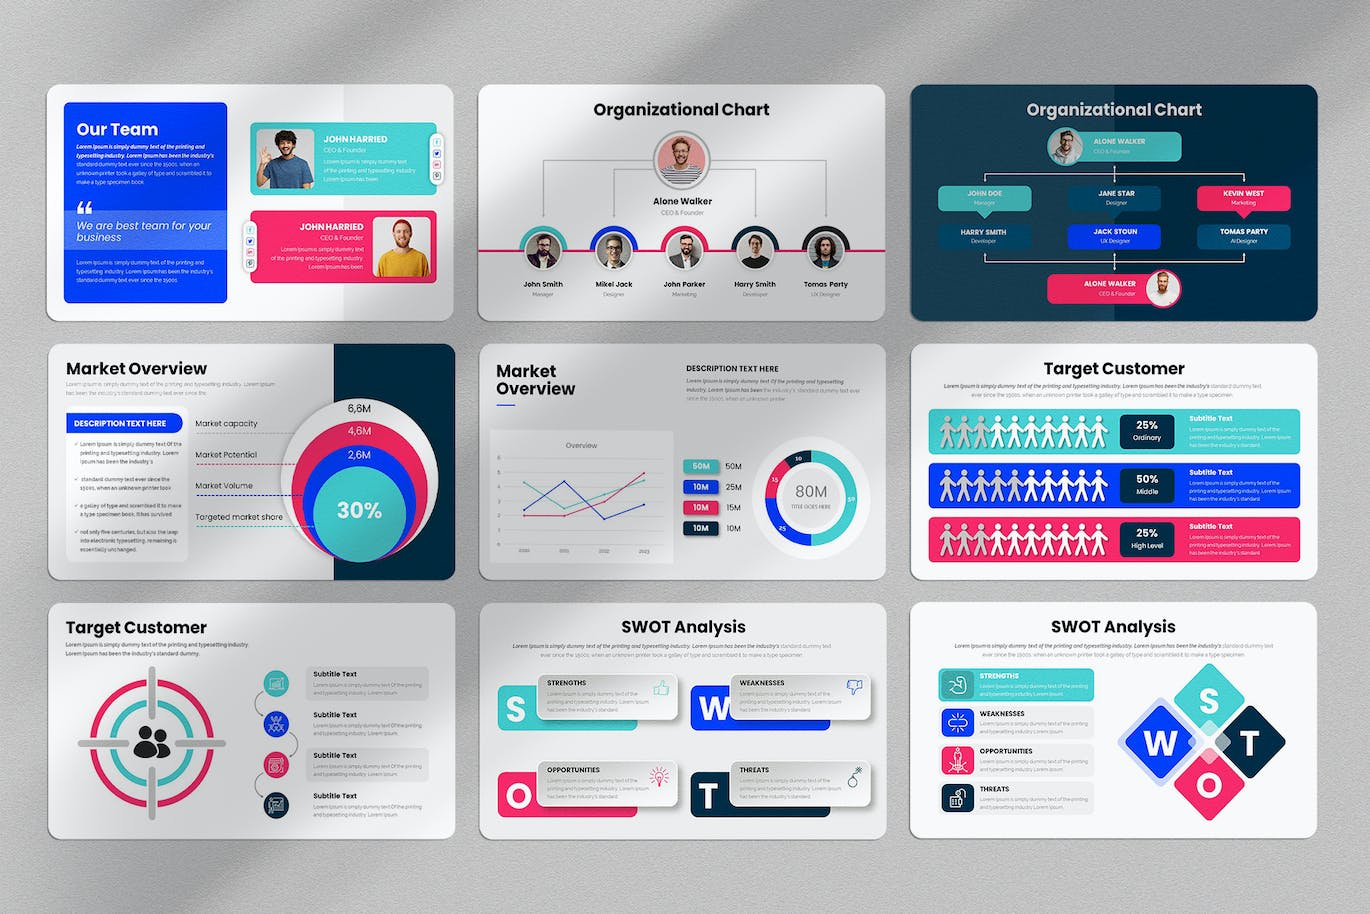 商业计划方案谷歌幻灯片演示文稿模板 Business Plan Google Slides Presentation Template 幻灯图表 第3张